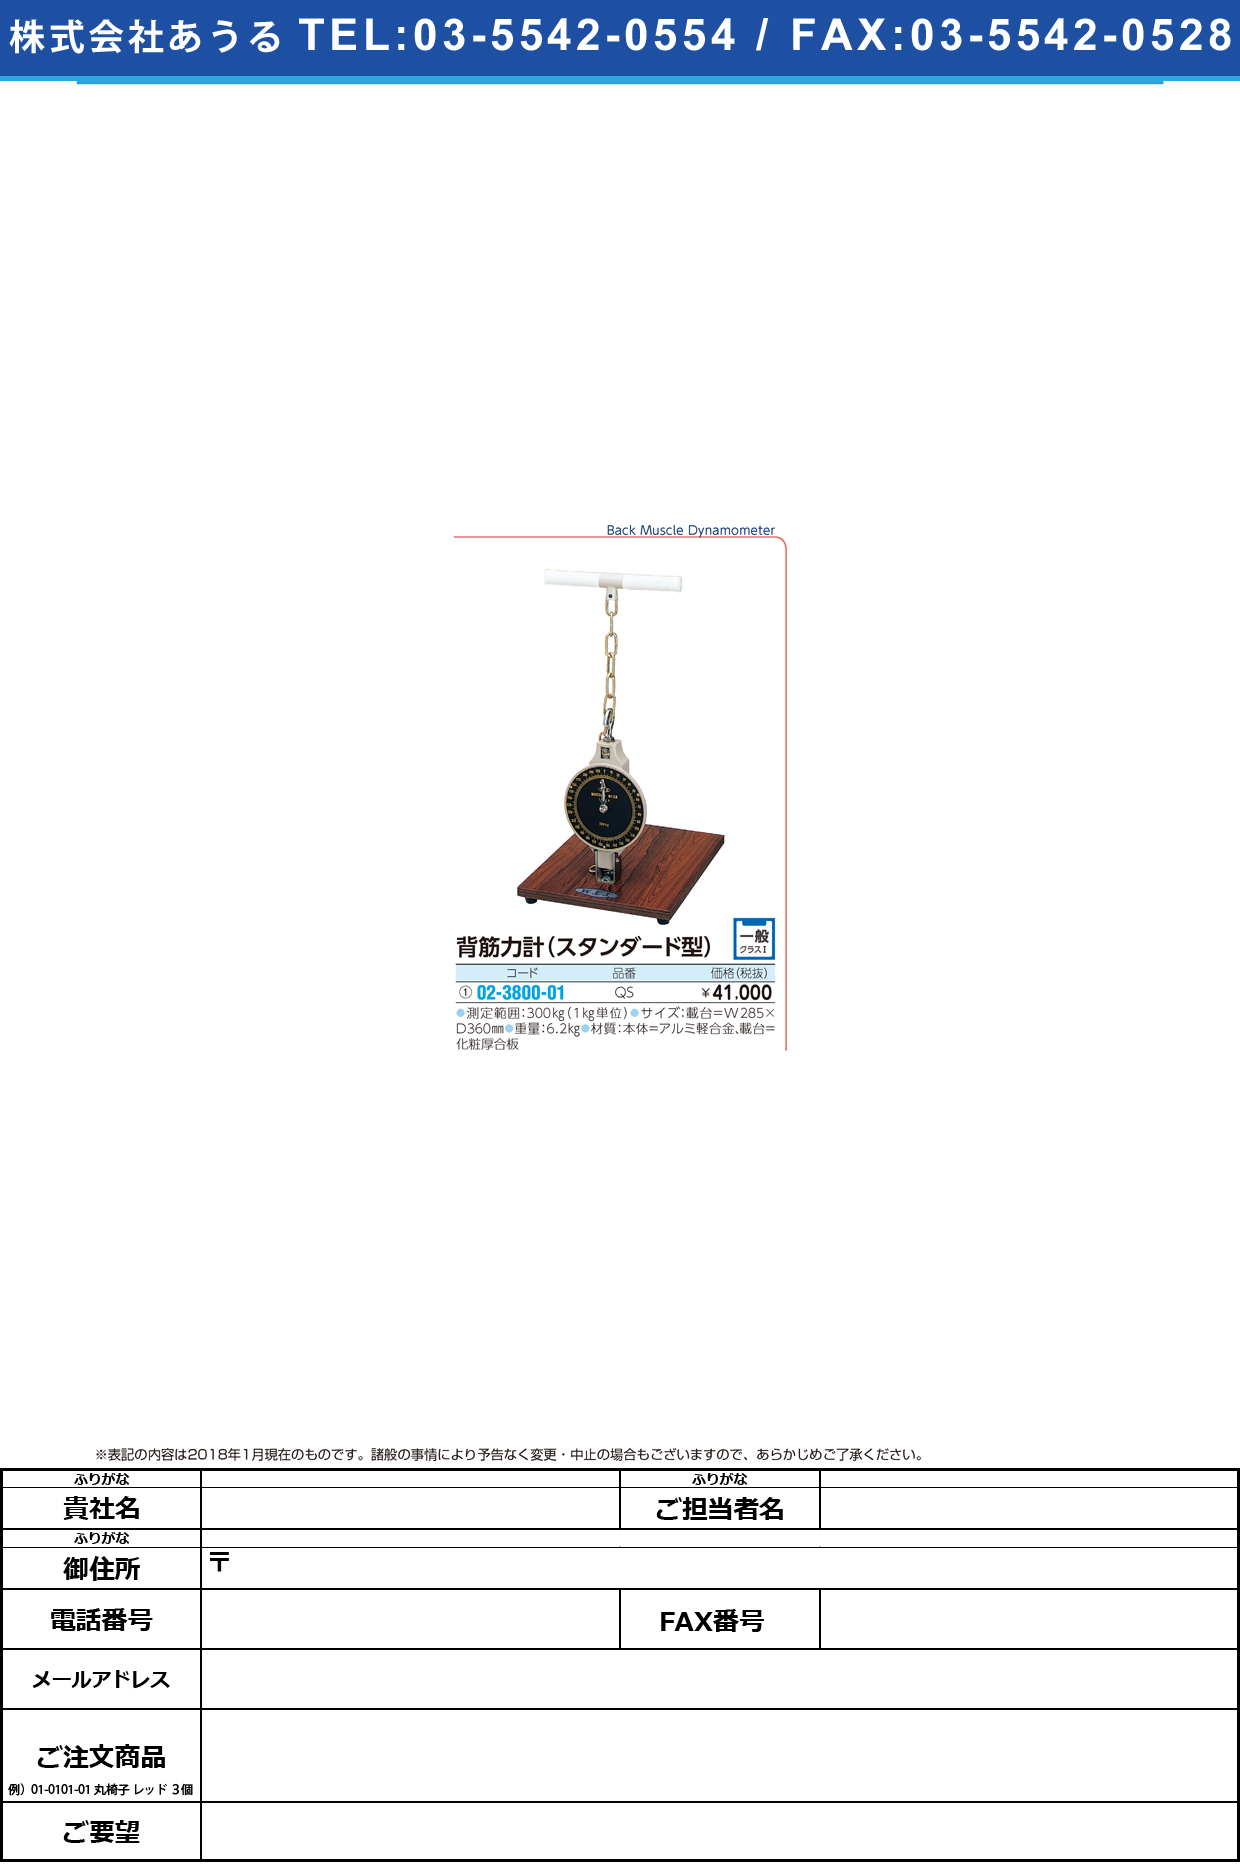 (02-3800-01)背筋力計（スタンダード型） QS(300KG) ﾊｲｷﾝﾘｮｸｹｲｽﾀﾝﾀﾞｰﾄﾞｶﾞﾀ【1台単位】【2018年カタログ商品】